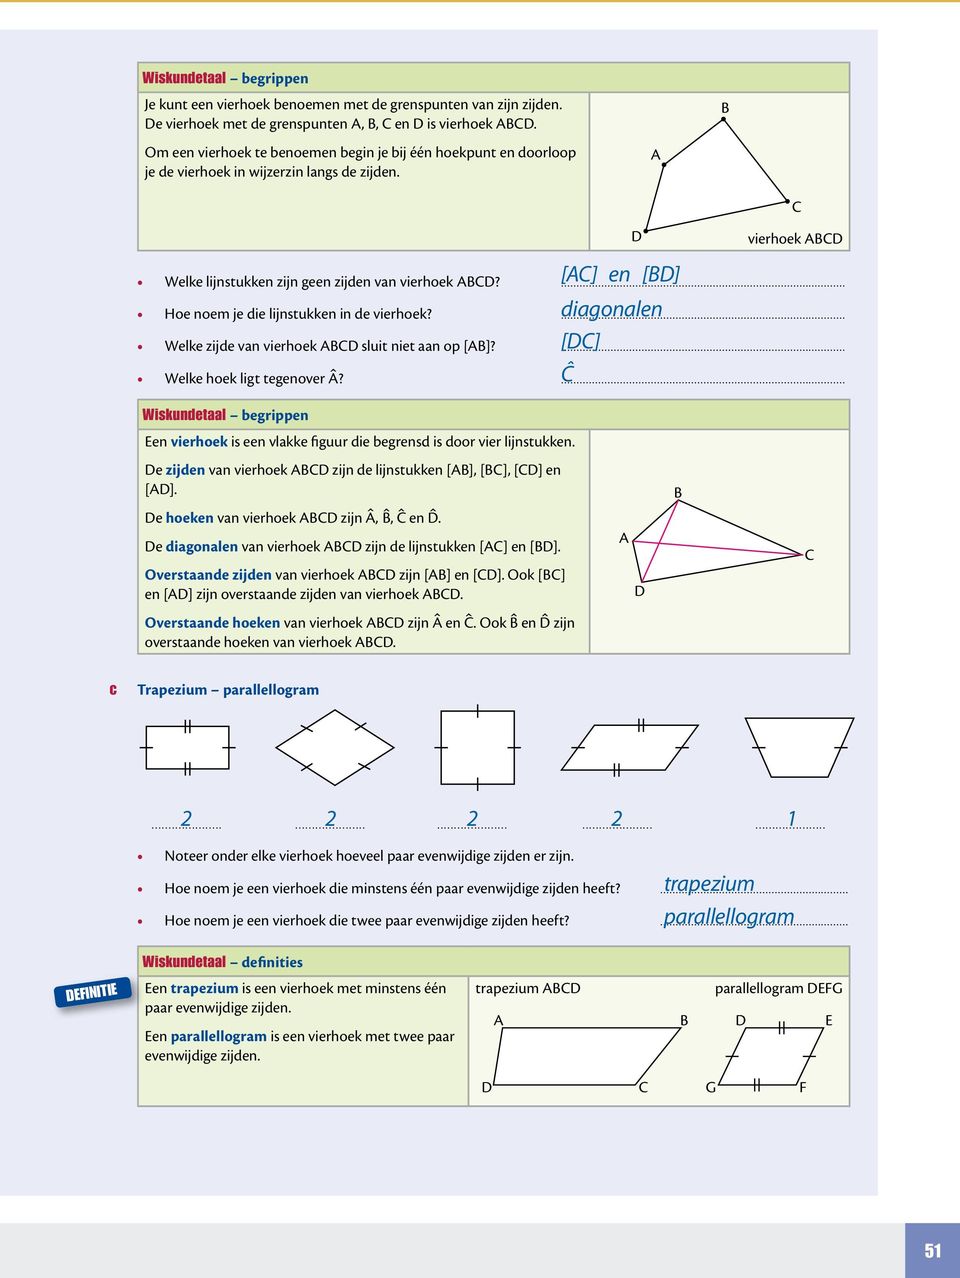 ... diagonalen [] Hoe noem je die lijnstukken in de vierhoek?... Welke zijde van vierhoek sluit niet aan op []?... Welke hoek ligt tegenover?